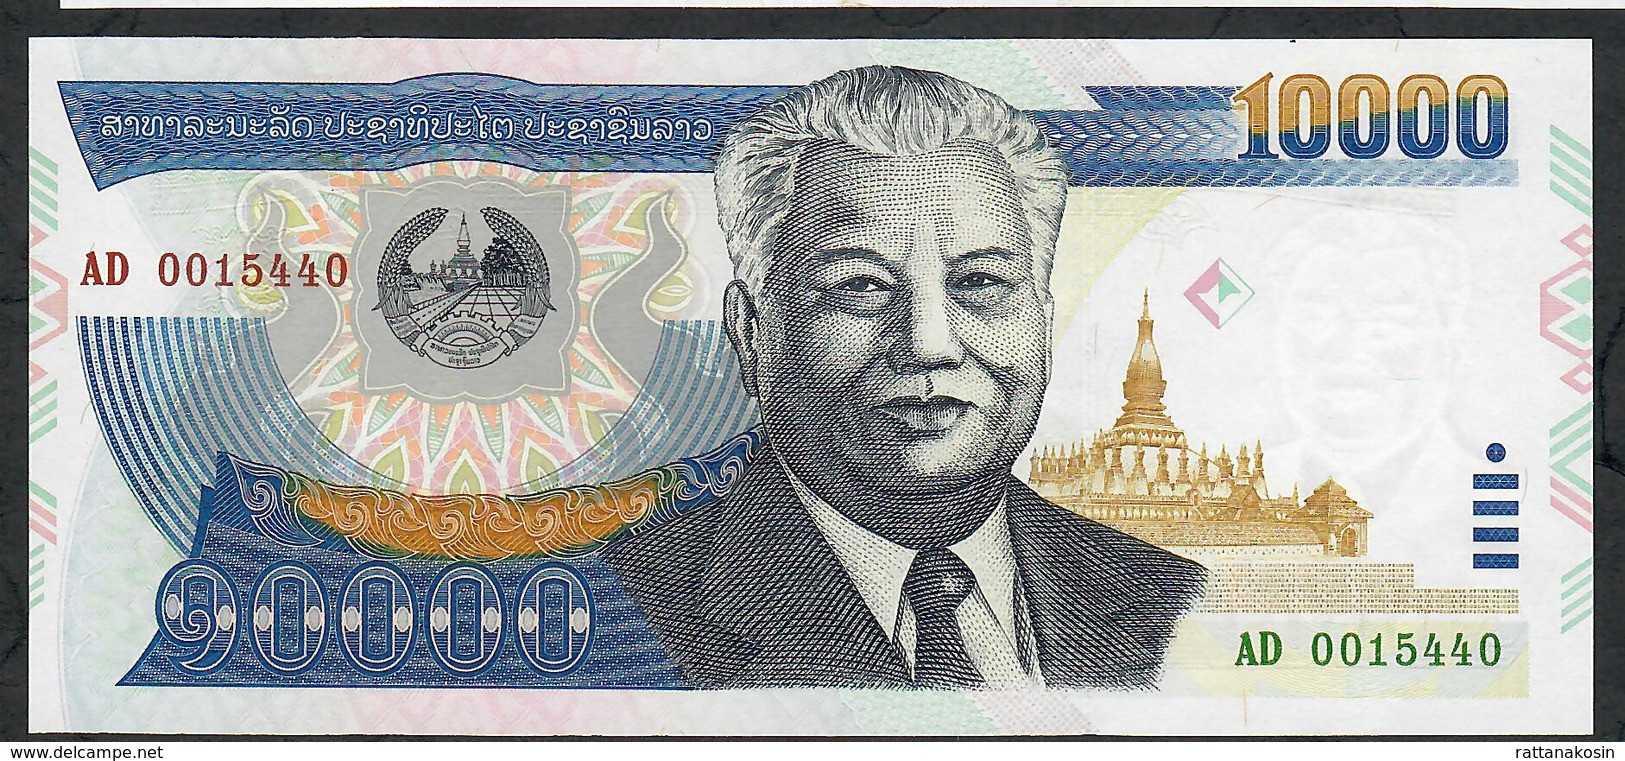 LAOS  P35a 10000 Or  10.000  KIP  2002 #AD  UNC. - Laos